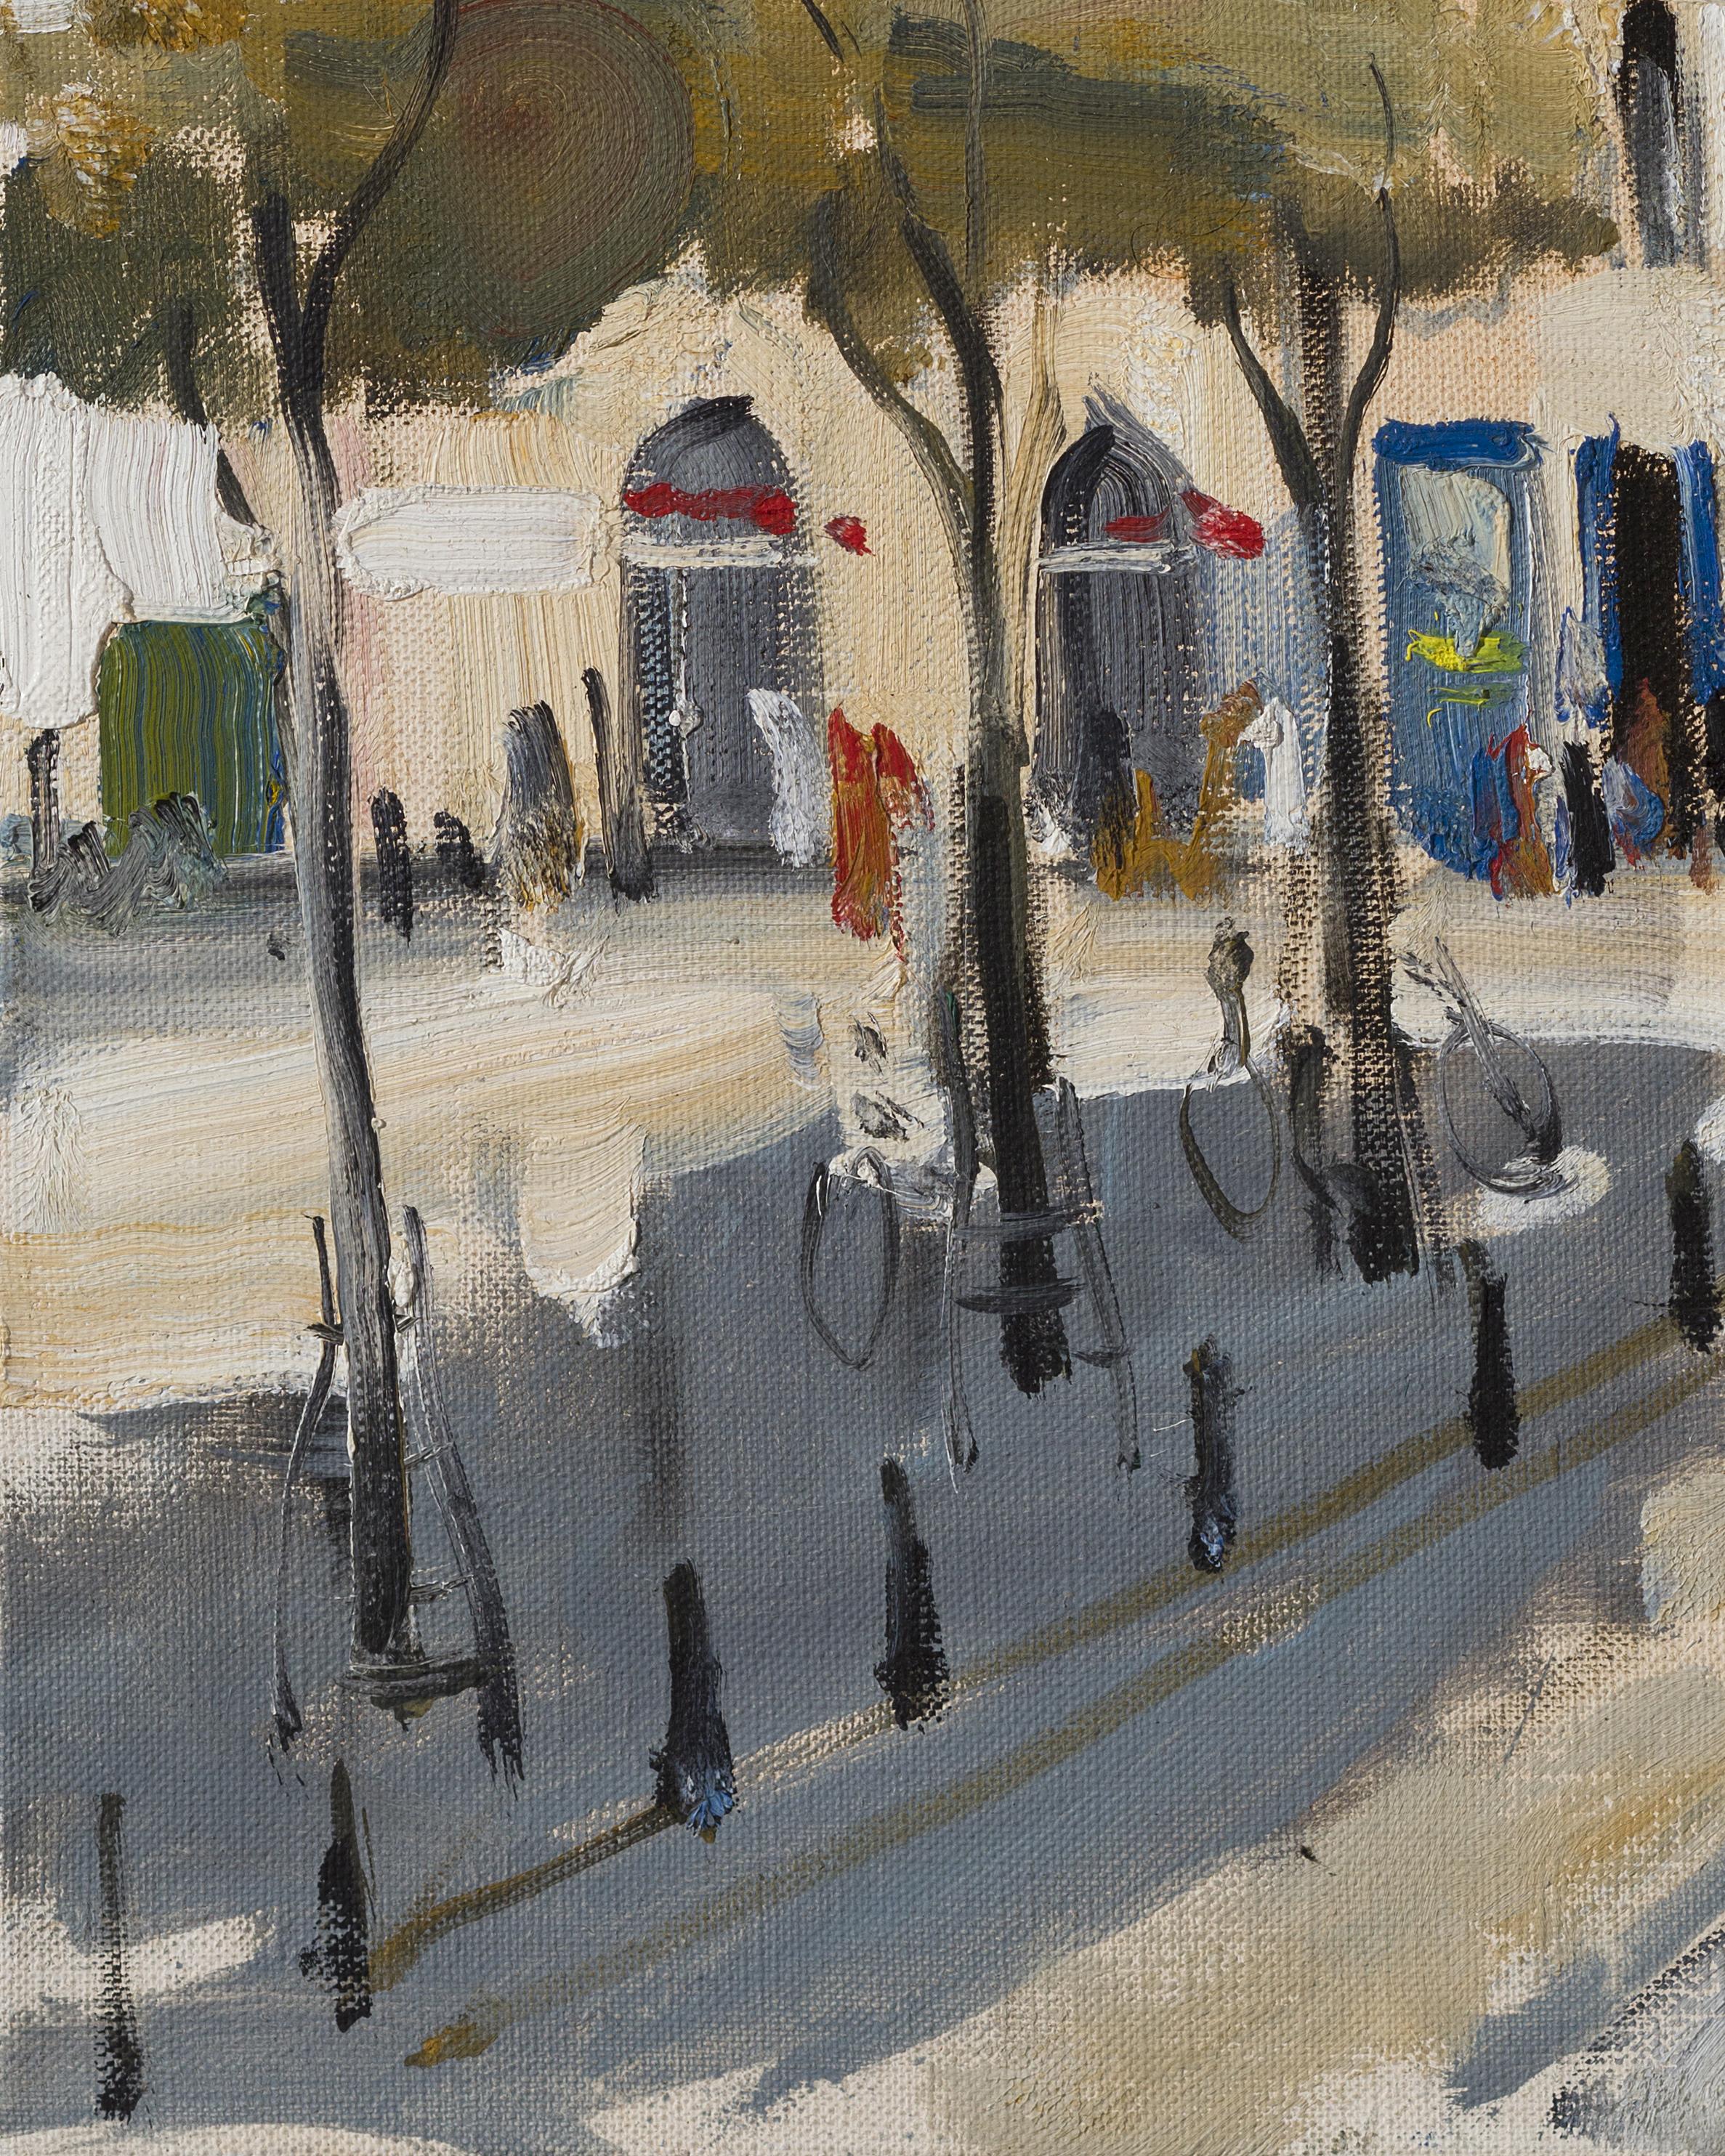 Paris. Place Dauphine - 21st Century Contemporary Urban Landscape Oil Painting 2